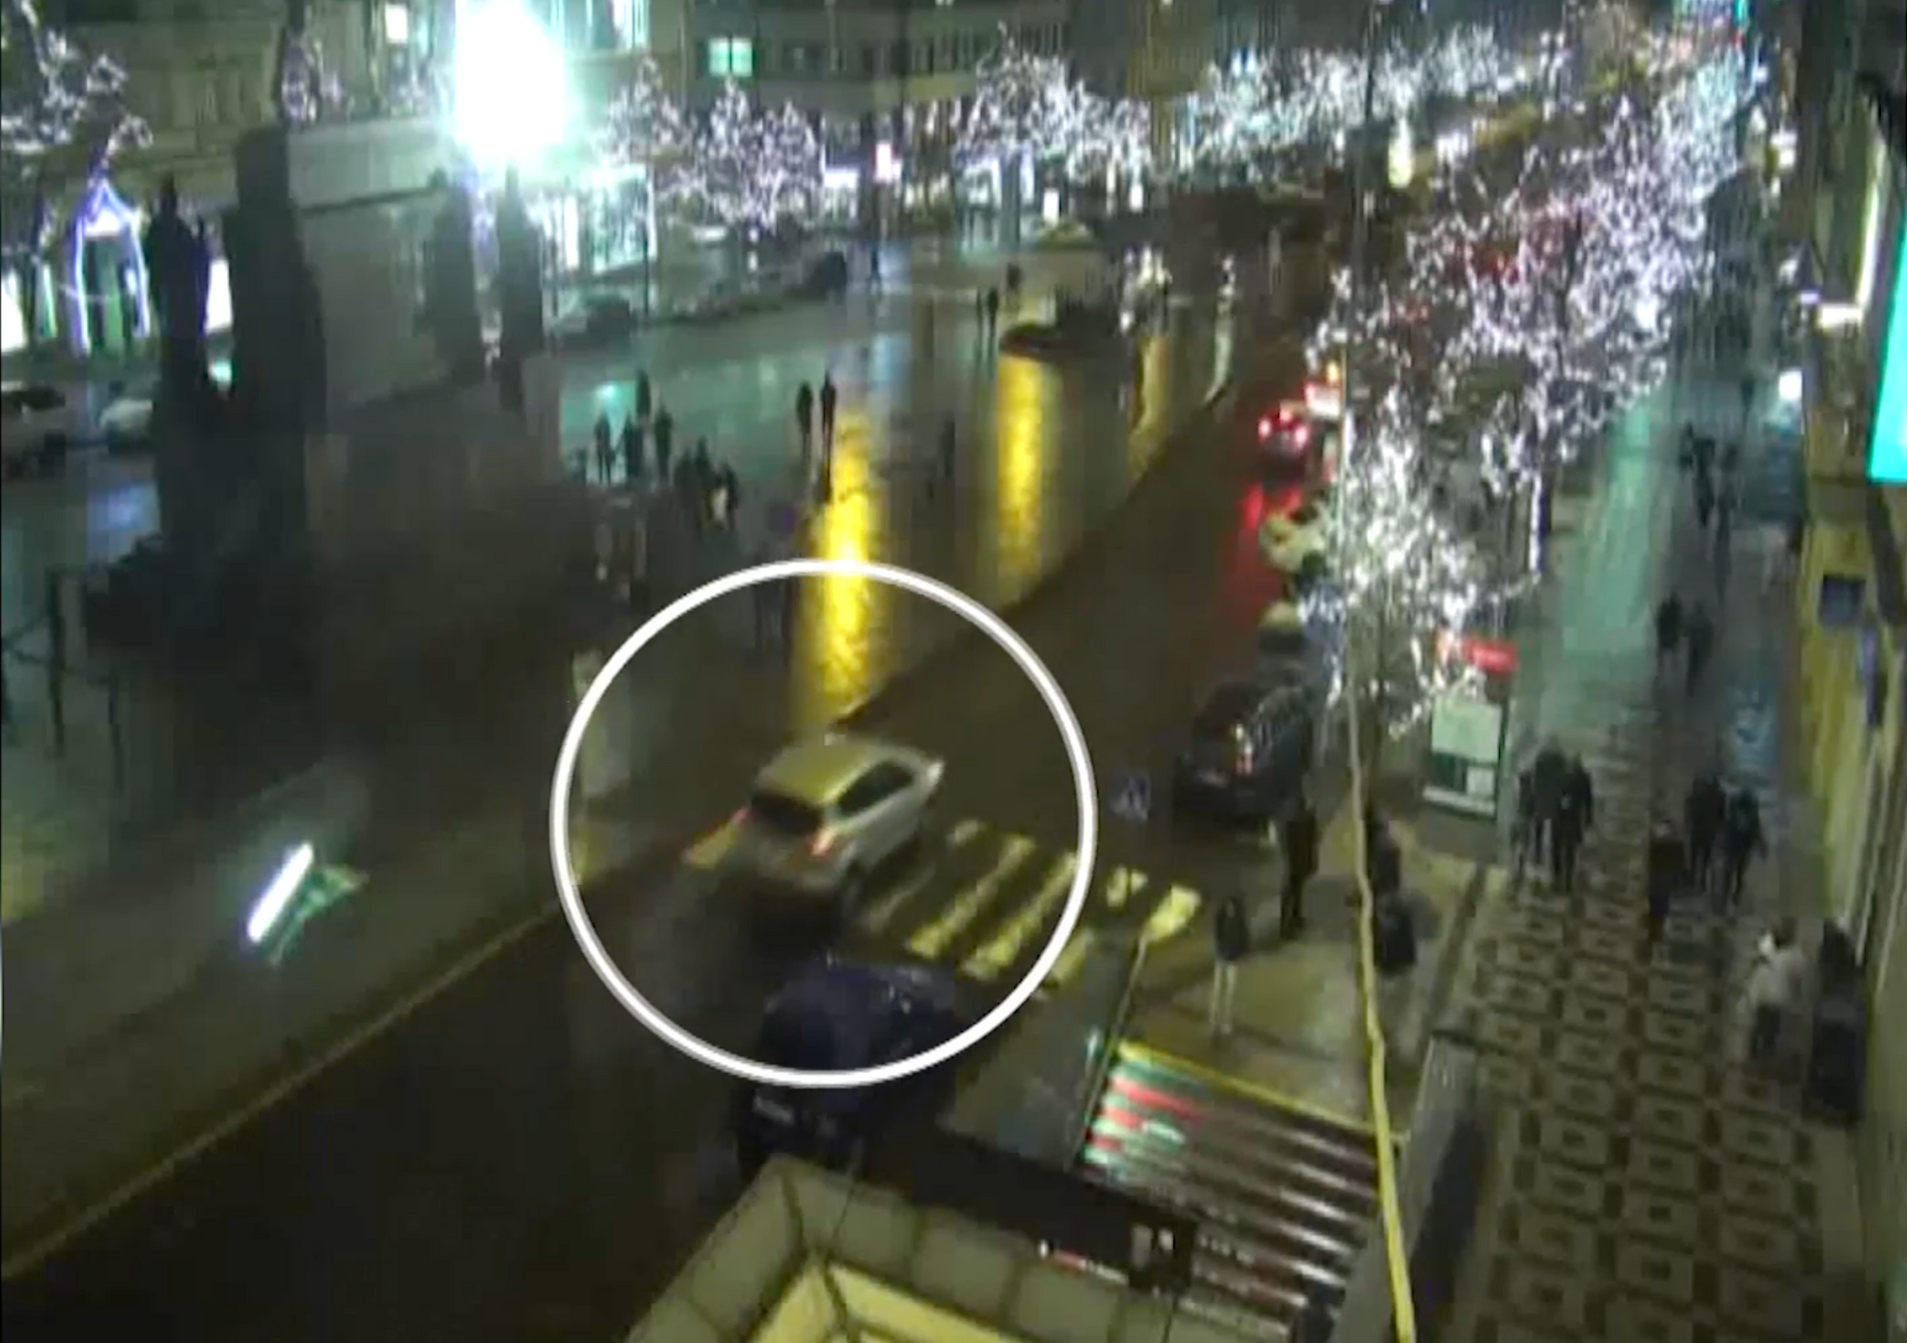 Cizinec ujížděl strážníkům v protisměru, zastavili ho až na Václavském náměstí. Nadýchal 1,2 promile